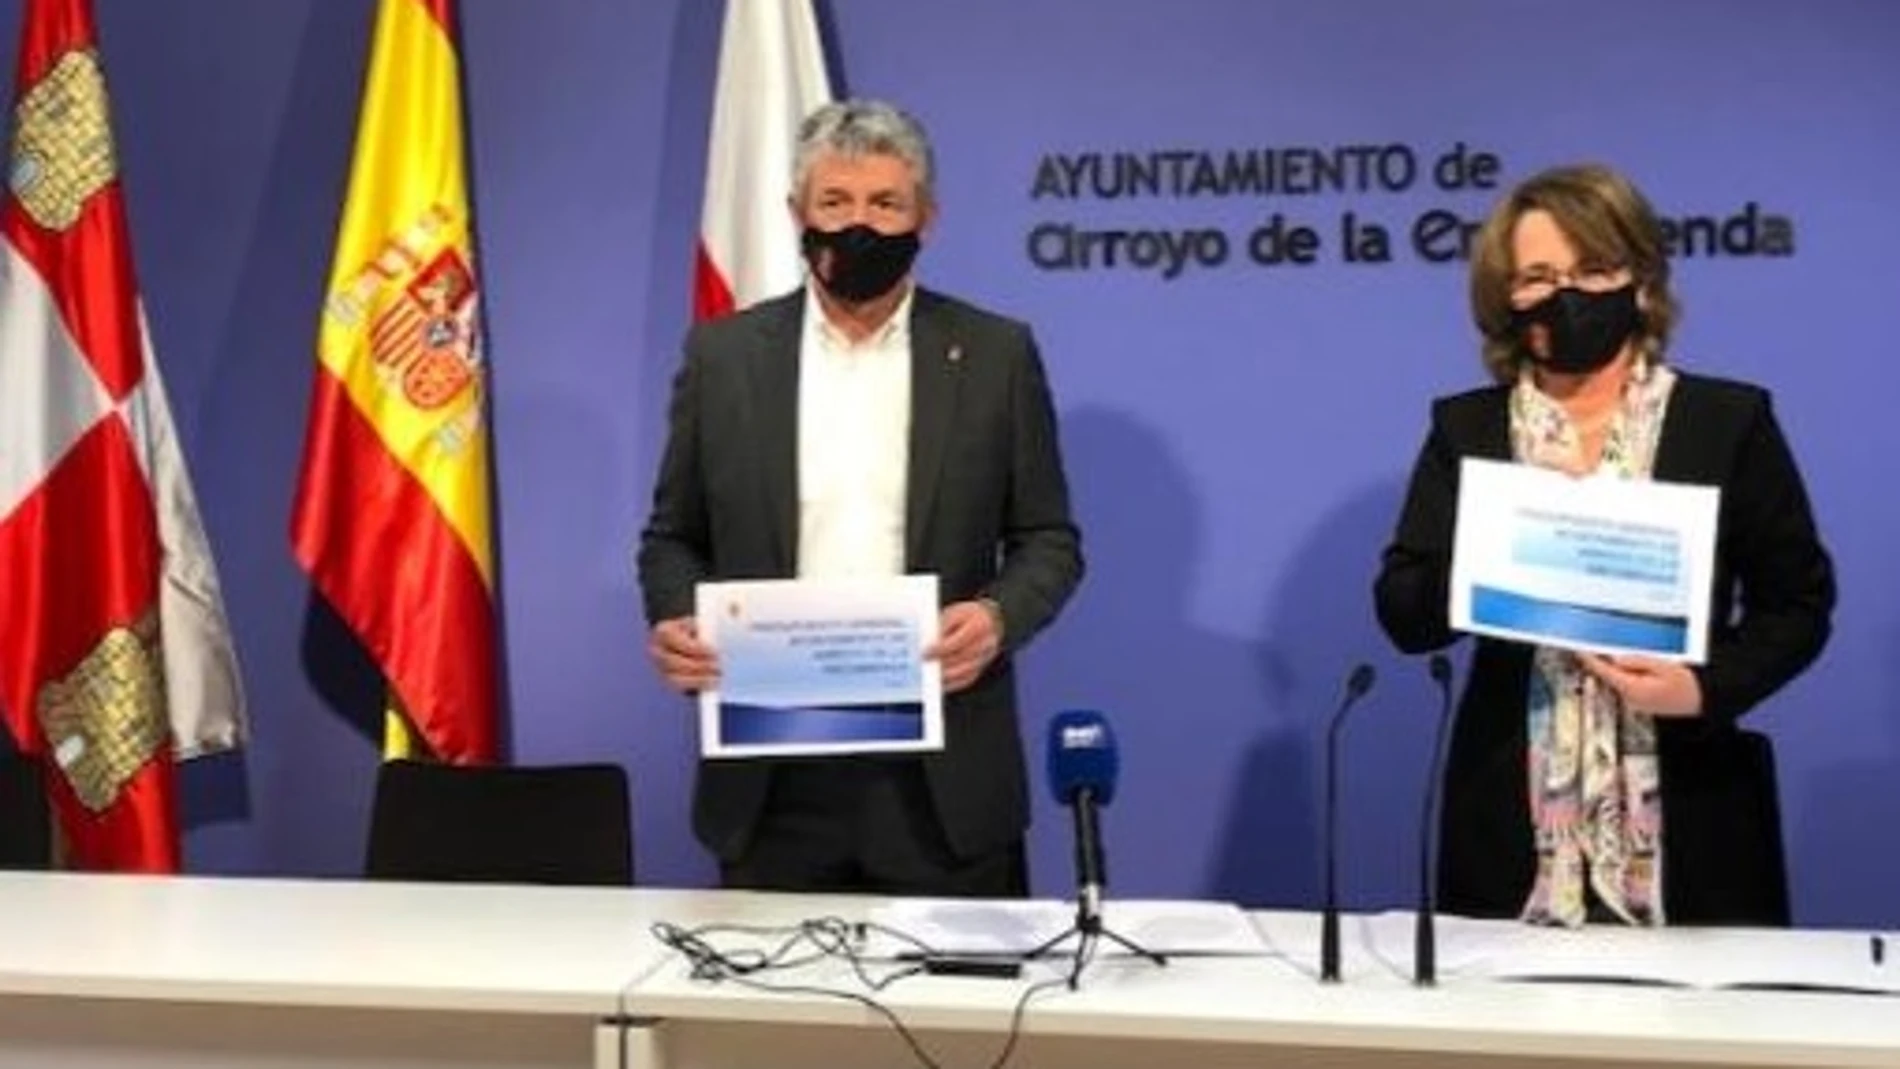 El alcalde de Arroyo de la Encomienda, Sarbelio Fernández, presenta los Presupuestos para 2022 junto a la concejal de Hacienda, Ángeles Retamero